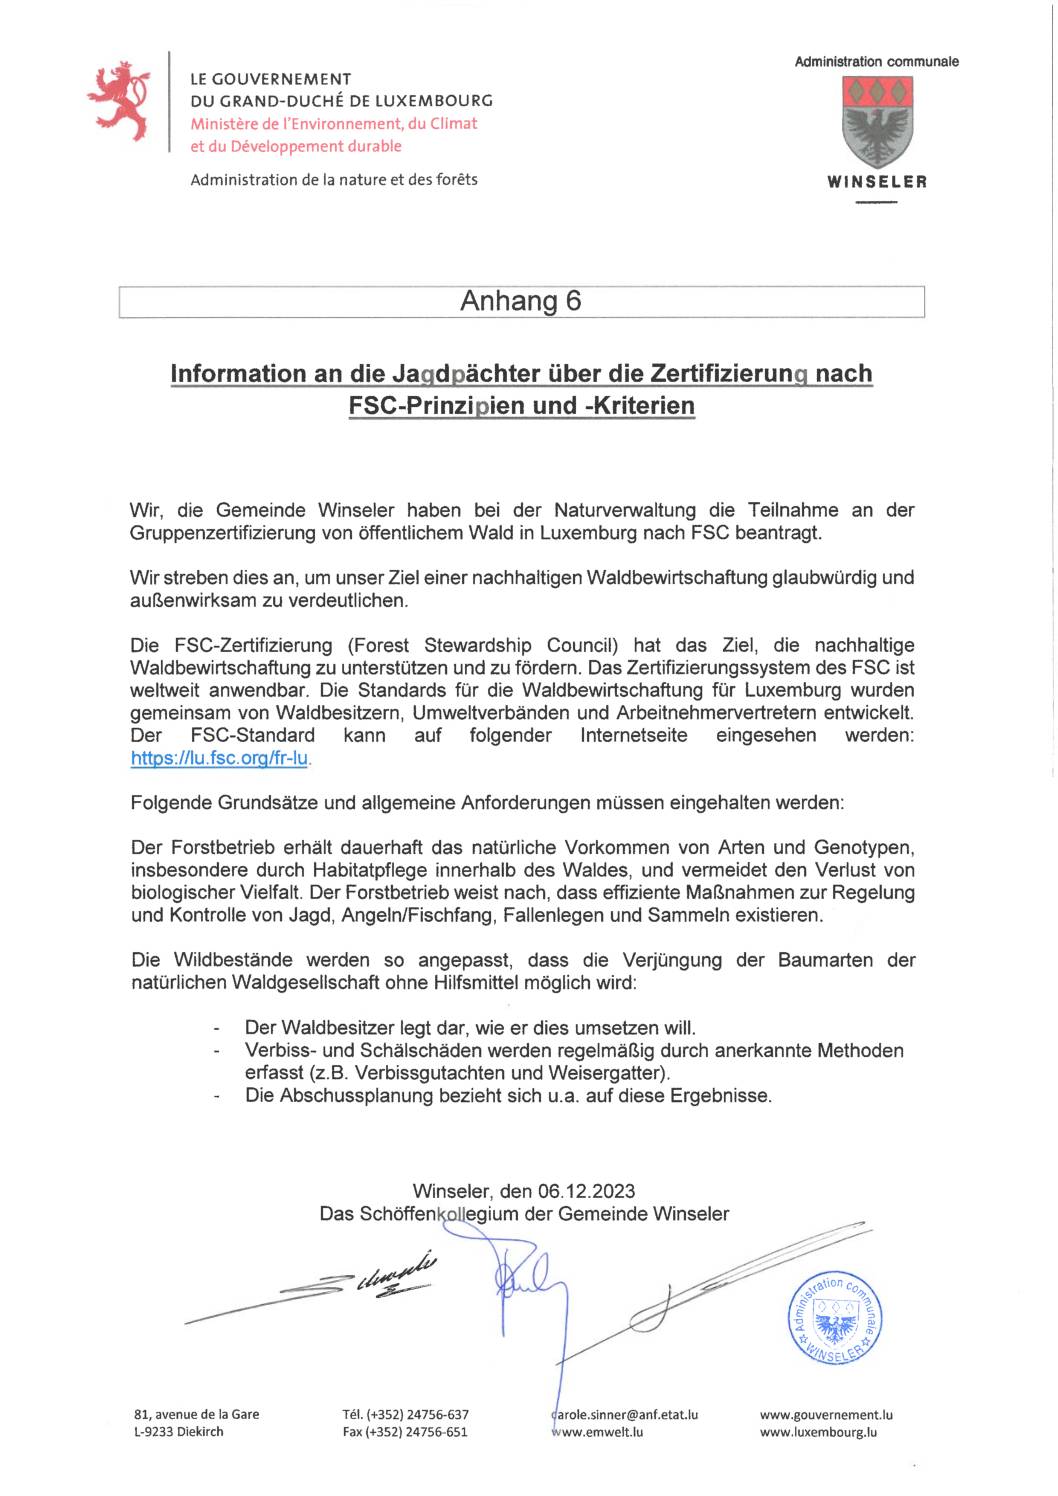 Information an die Jagdpächter über die Zertifizierung nach FSC-Prinzipien und -Kriterien